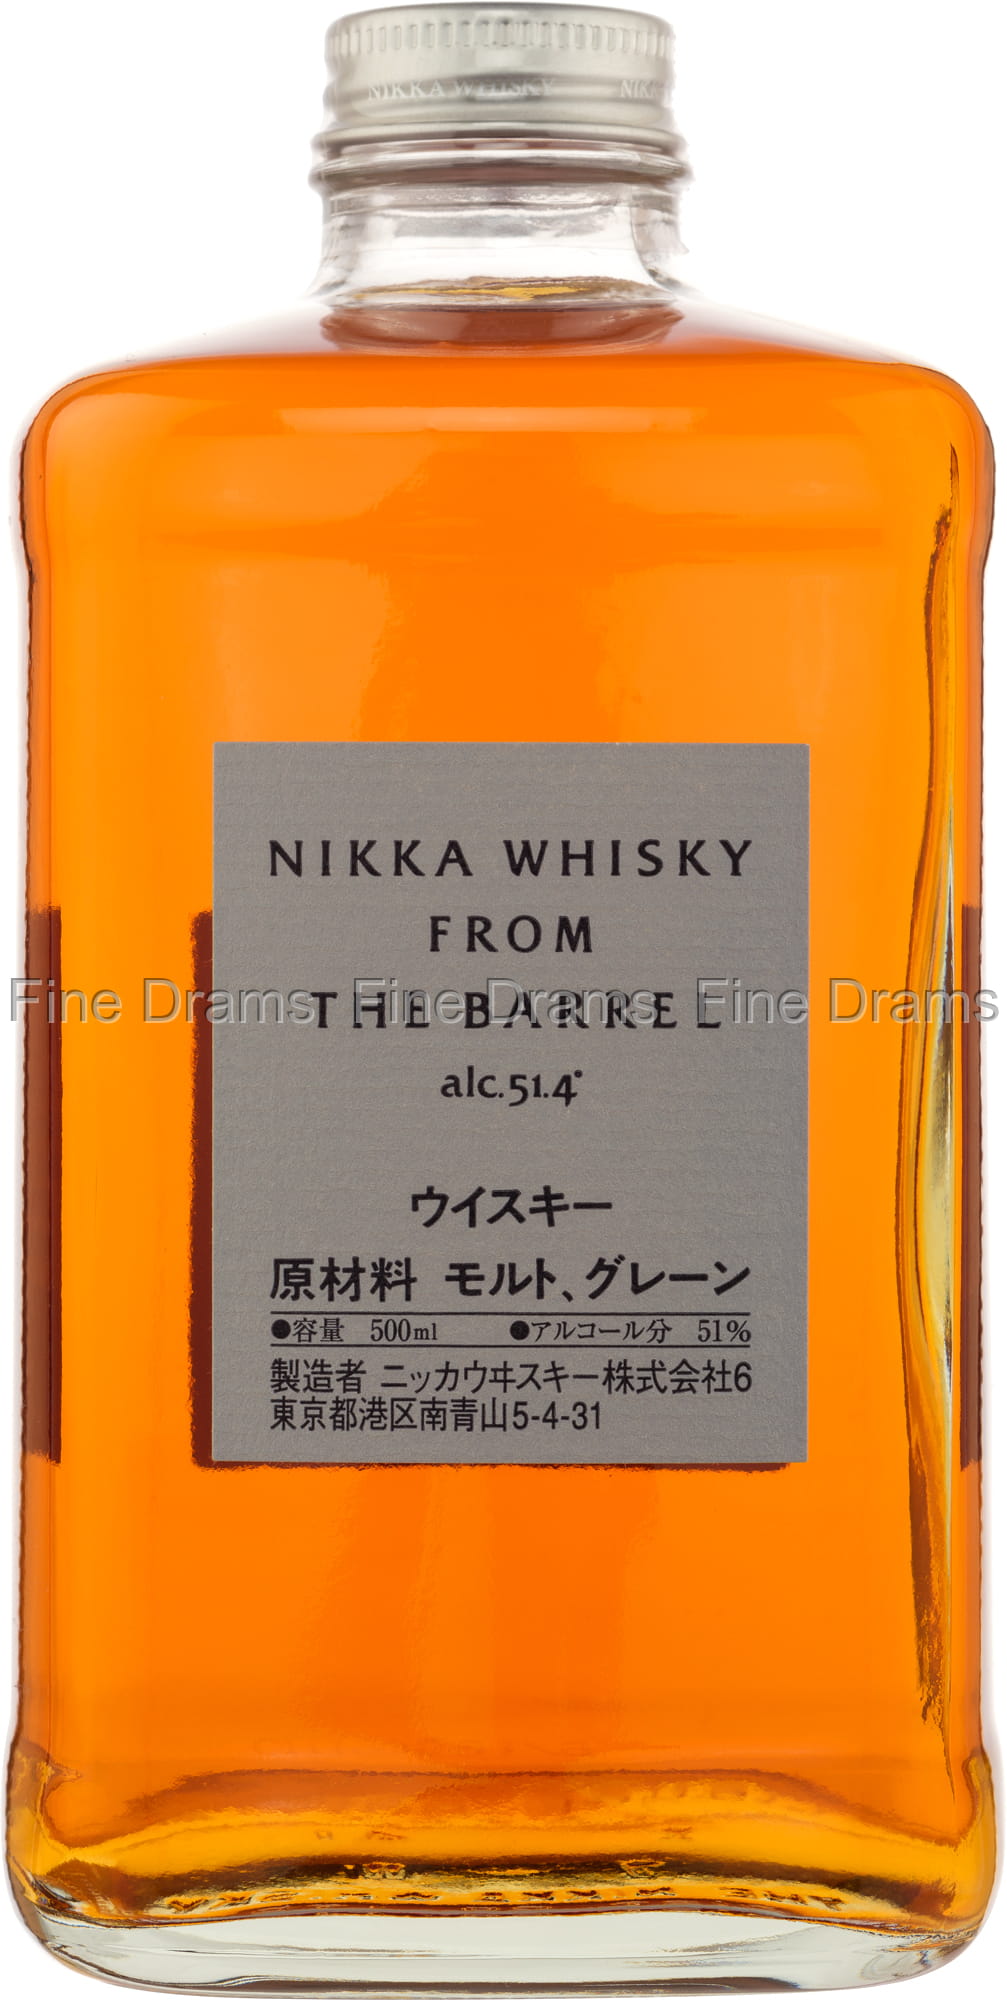 Nikka Whisky From The Barrel Japanese Whisky - Blended